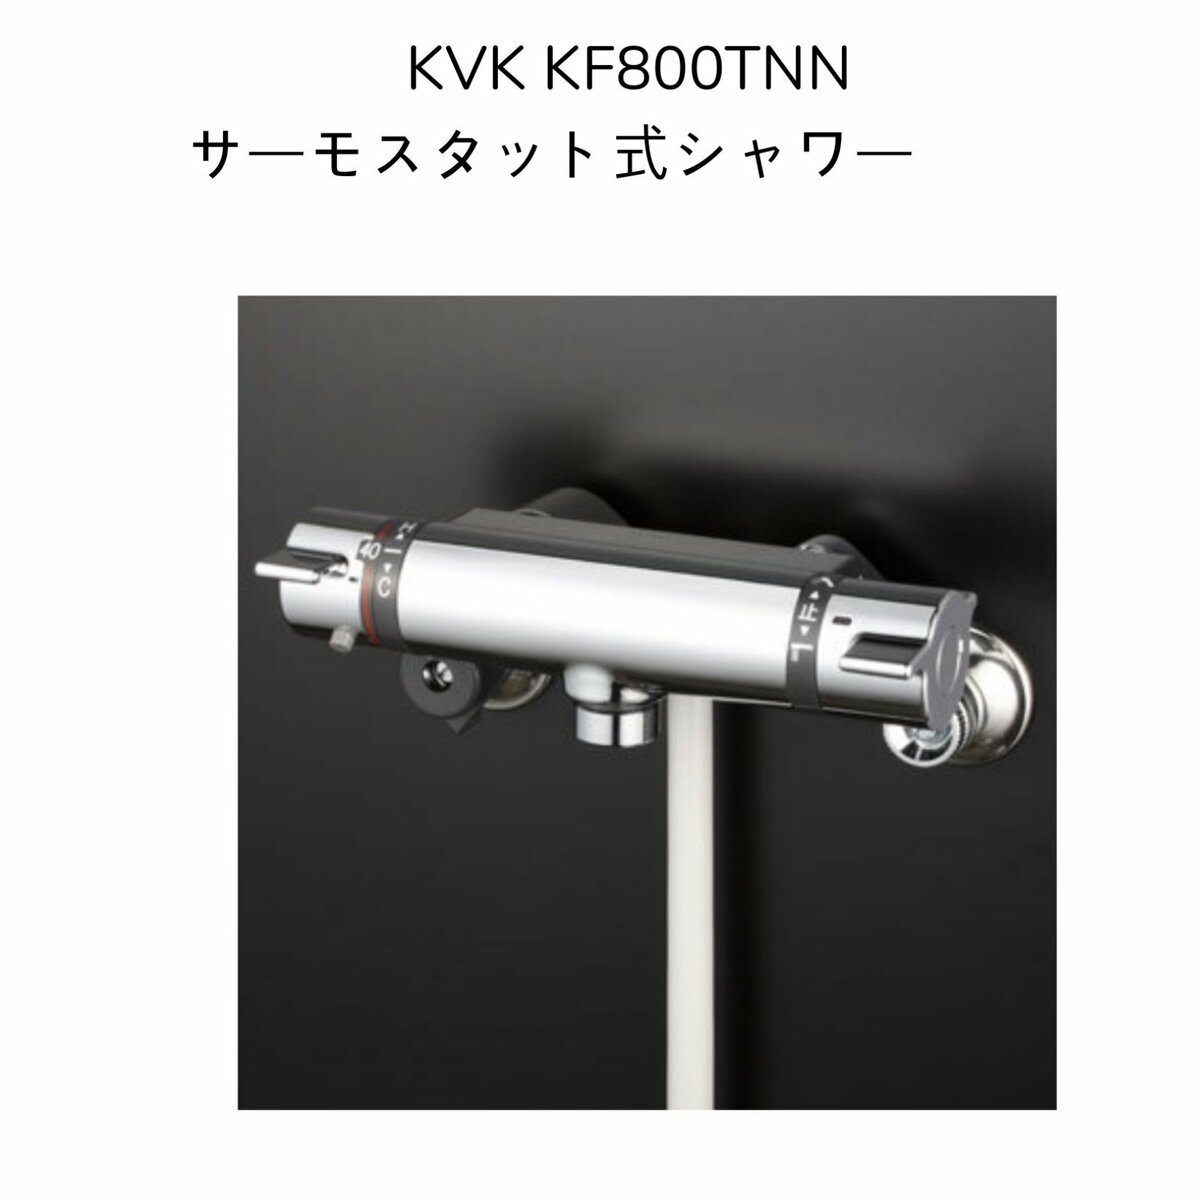 【限定在庫】KVK KF800TNN サーモスタット式シャワー クランク芯々110〜210mm スパウト長さ0mm シャワーヘッドグレー シャワーホースグレー1.6m グレーハンガー 混合水栓 湯水